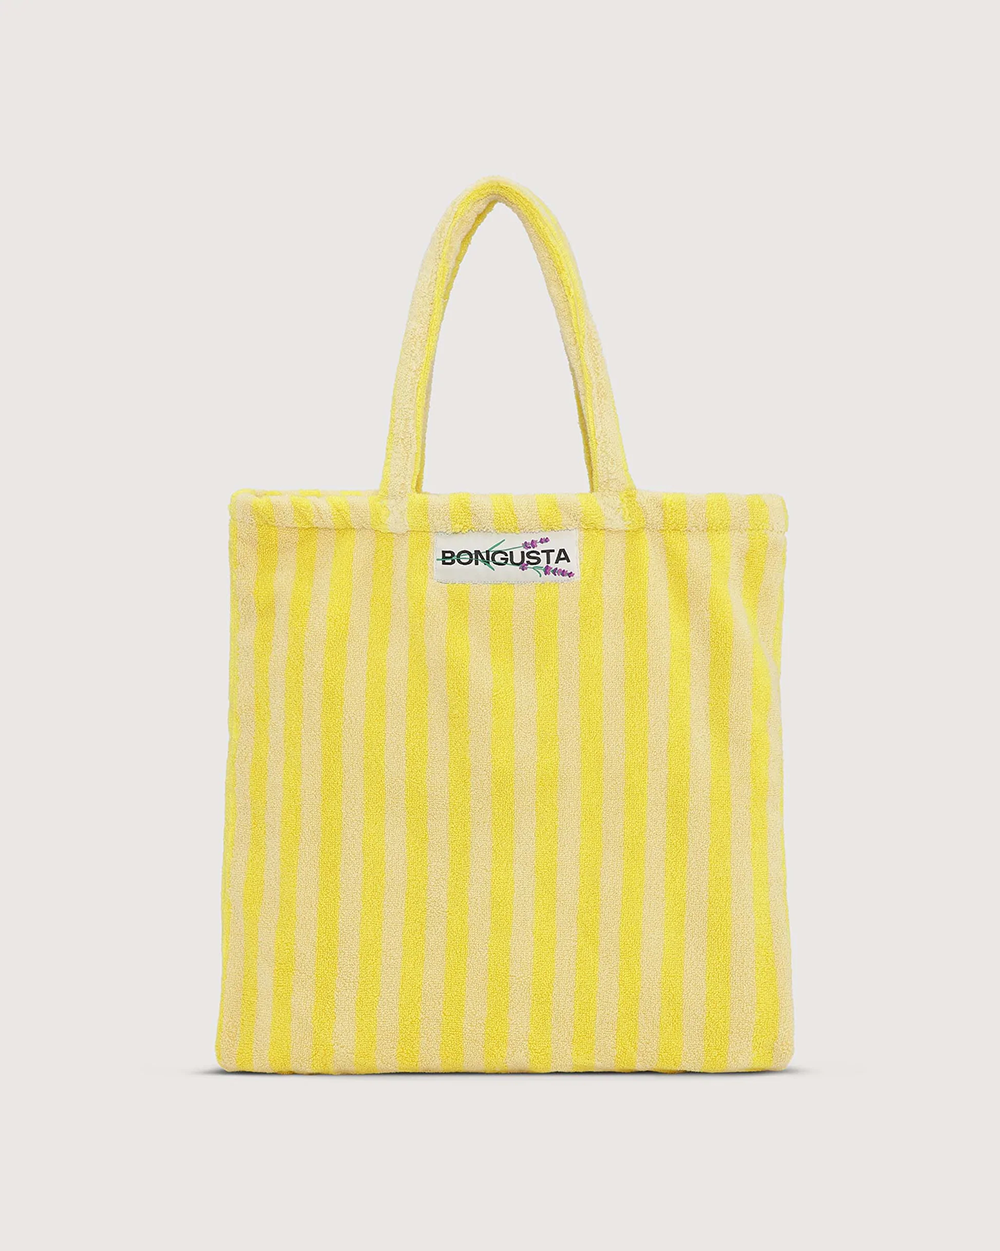 (Bongusta) Naram Tote bag - Pristine & Neon yellow